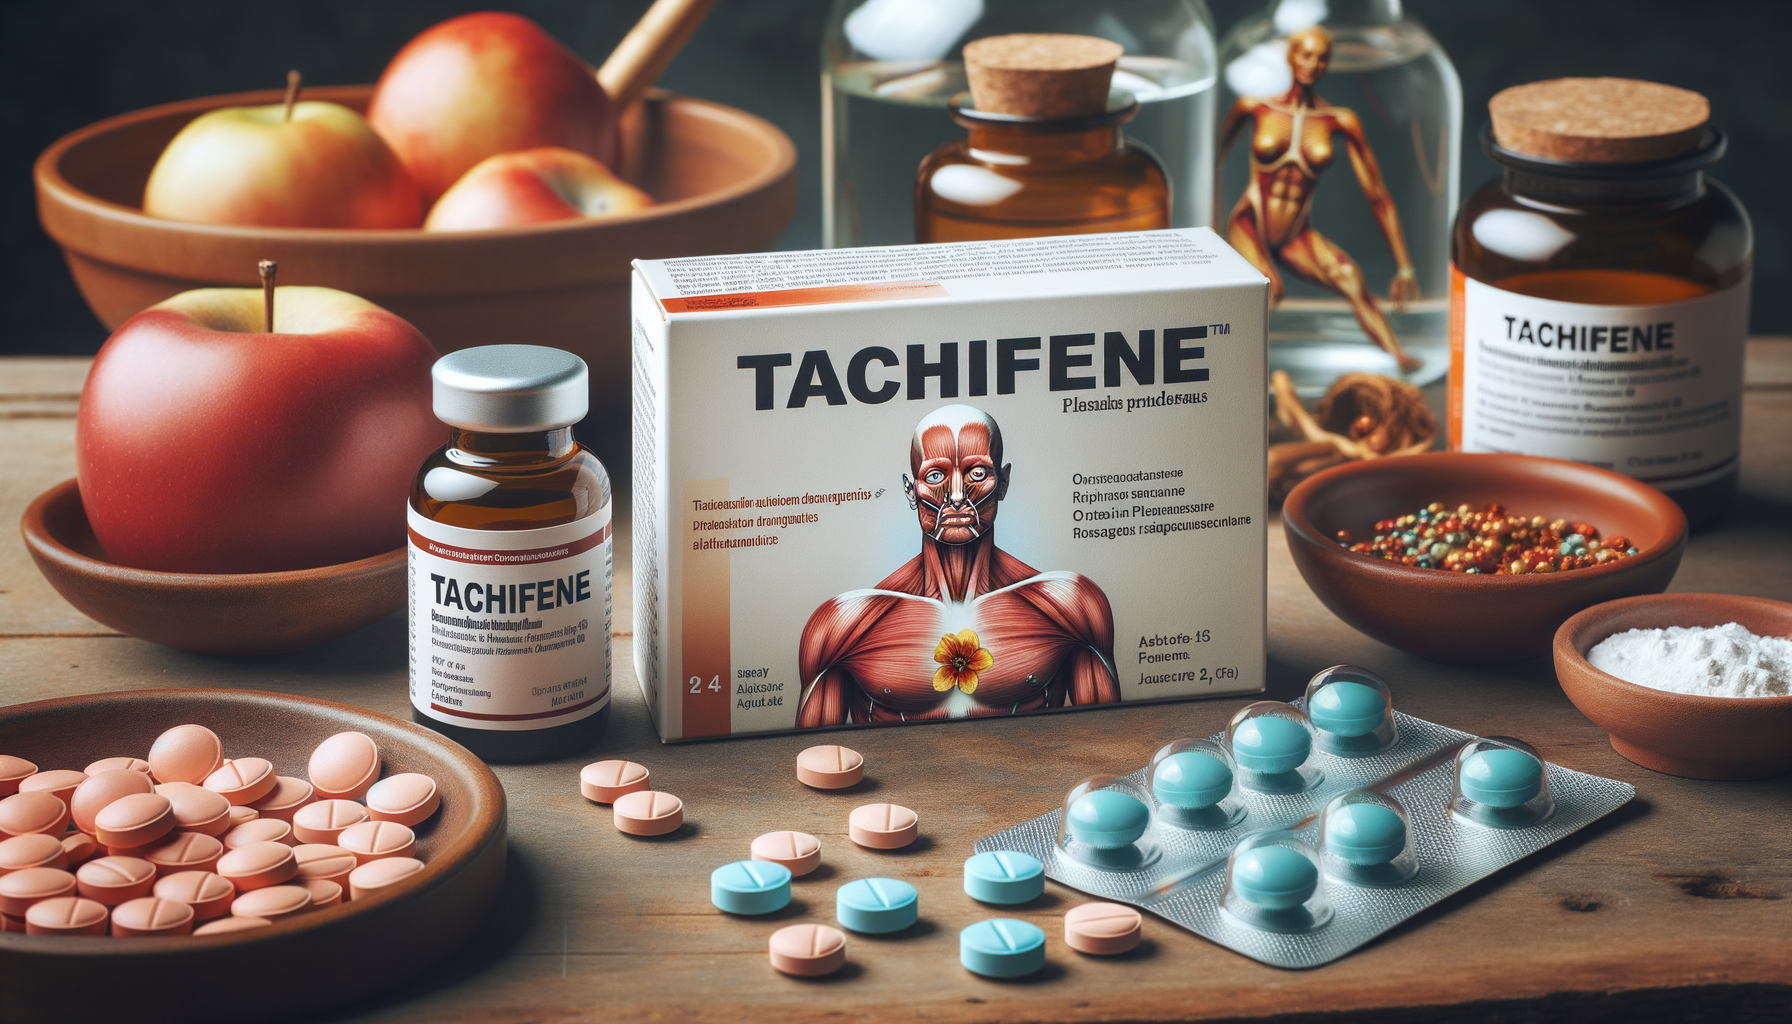 Quali sono gli effetti collaterali di Tachifene?